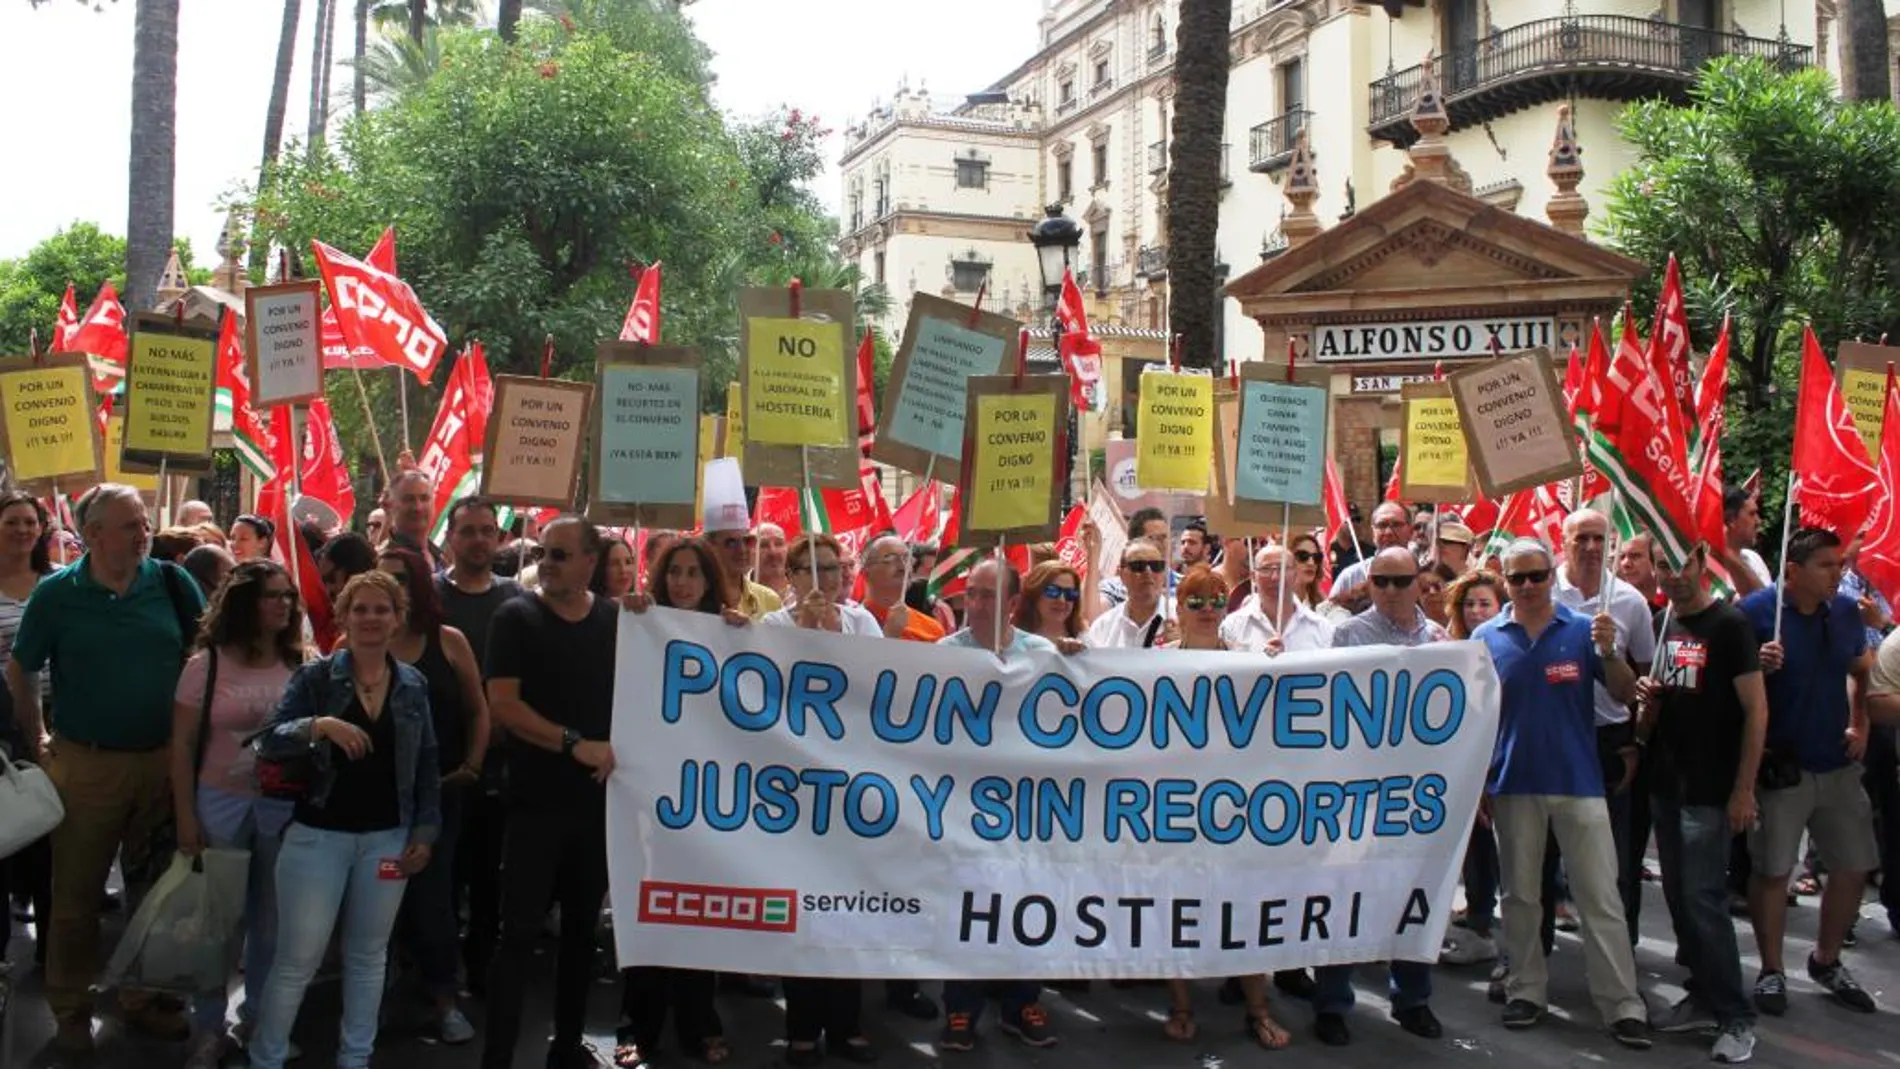 La patronal rompe la negociación del convenio de hostelería por la protesta sindical ante el Alfonso XIII